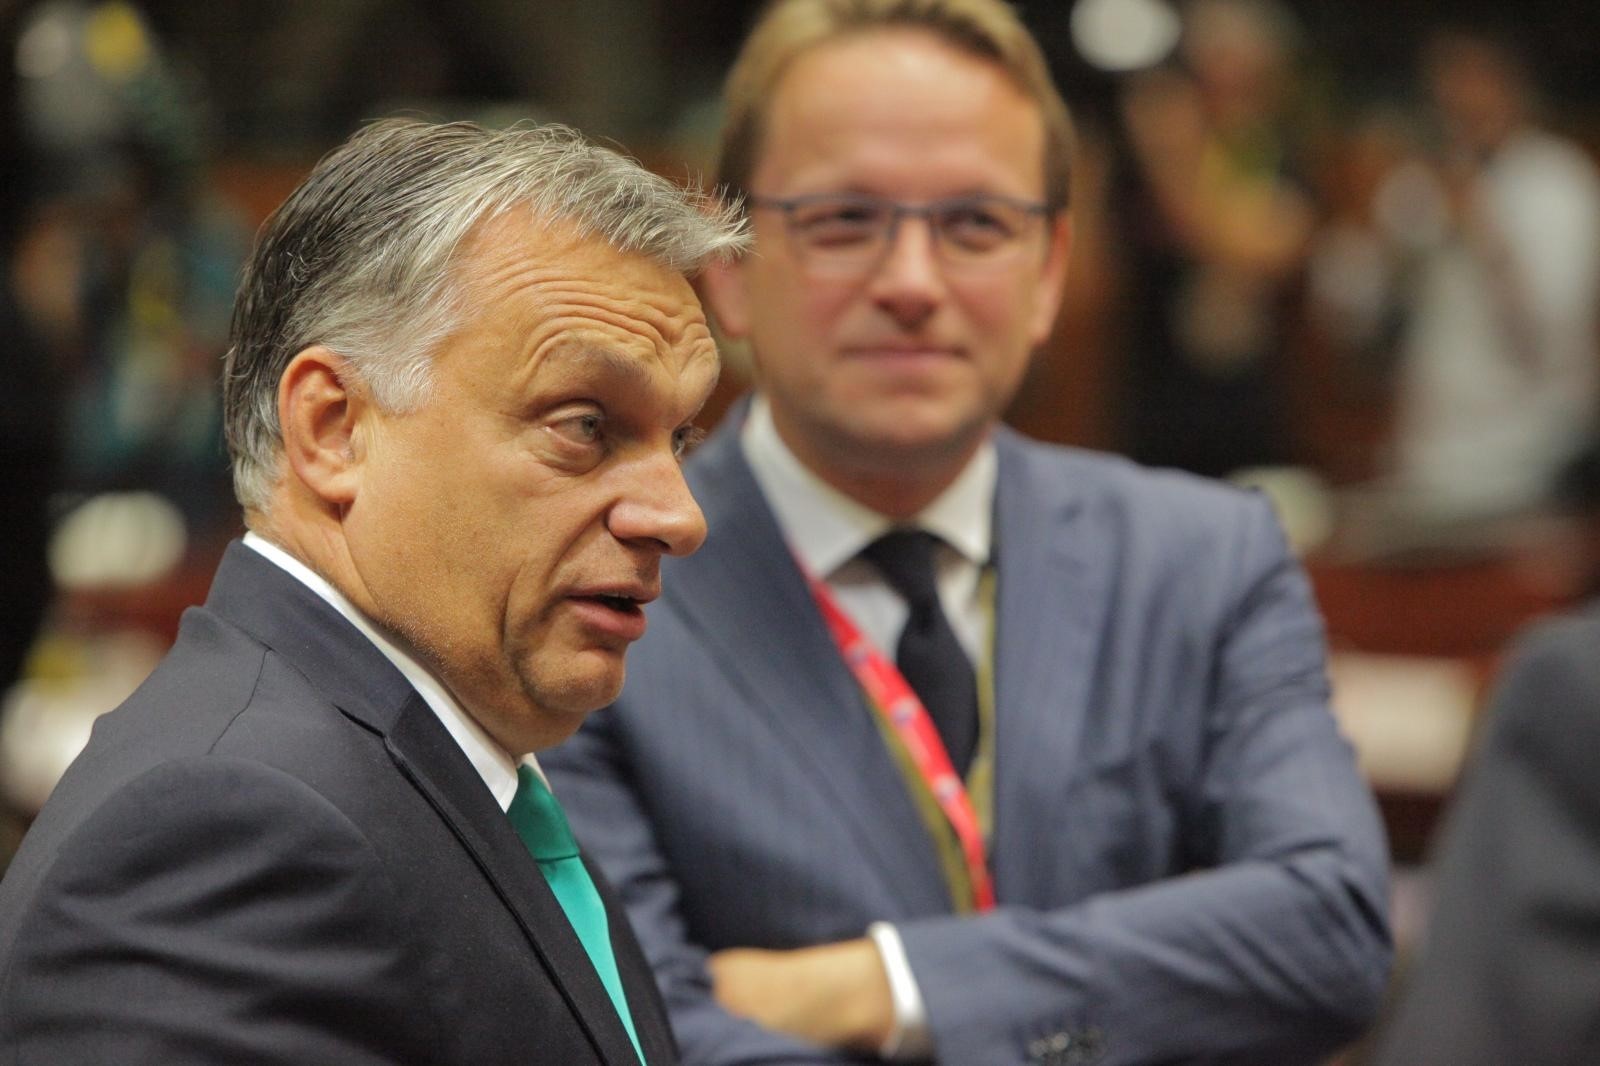 20.10.2017., Bruxselles - Madjarski premijer Viktor Orban gestikulira u razgovoru s kolegama na pocetku drugog dana sastanka Europskog vijeca u Bruxellesu. 
Photo: Tomislav Krasnec/PIXSELL